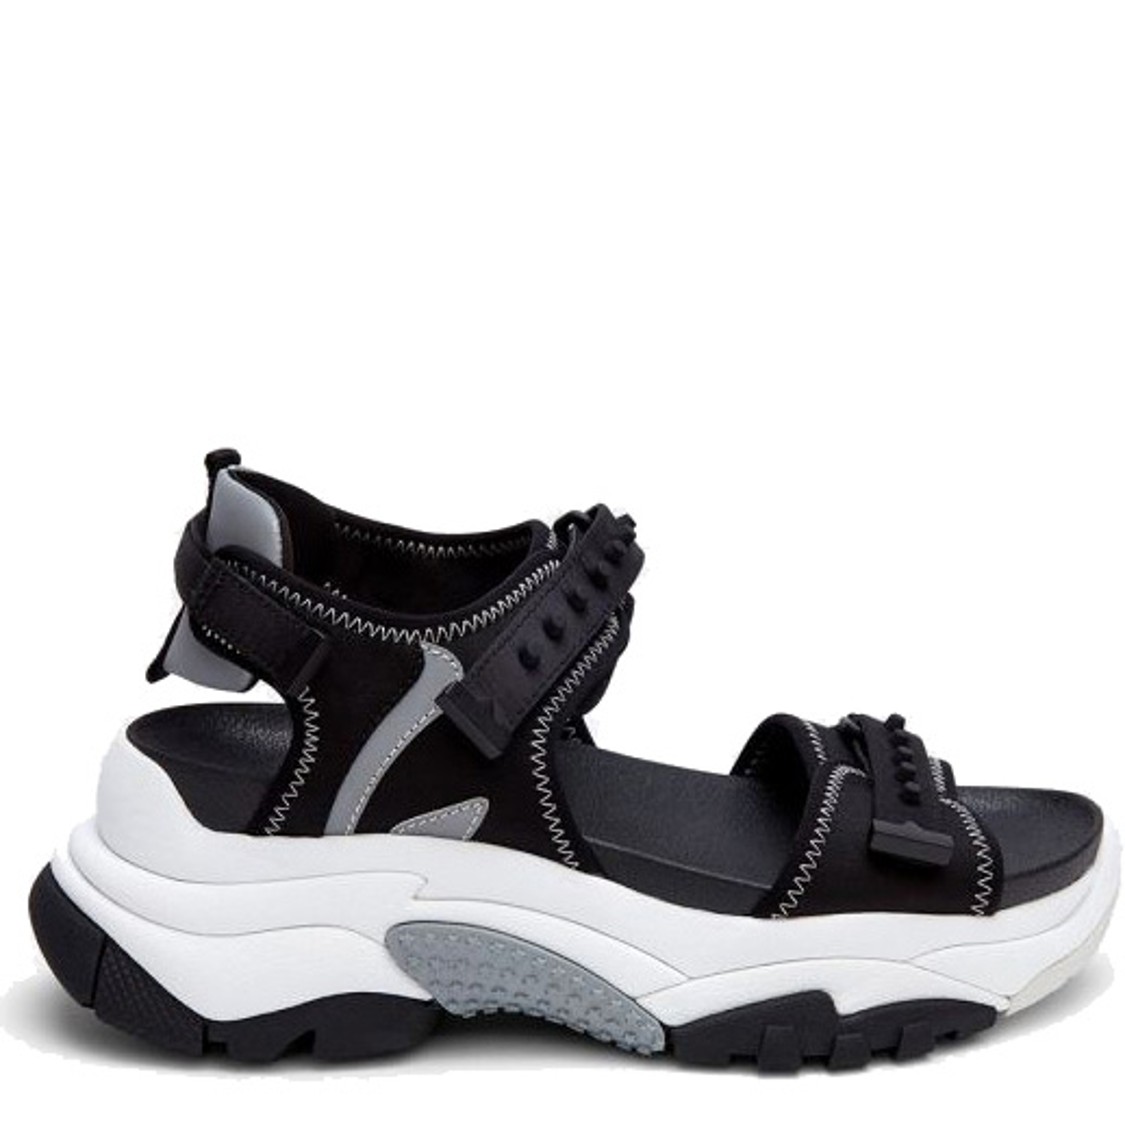 shop Ash Saldi Scarpe: Scarpe Ash, sandalo Adapt, suola della sneakers, doppia chiusura sopra, caviglia rinforzata.

Zeppa: 5 cm. number 1847